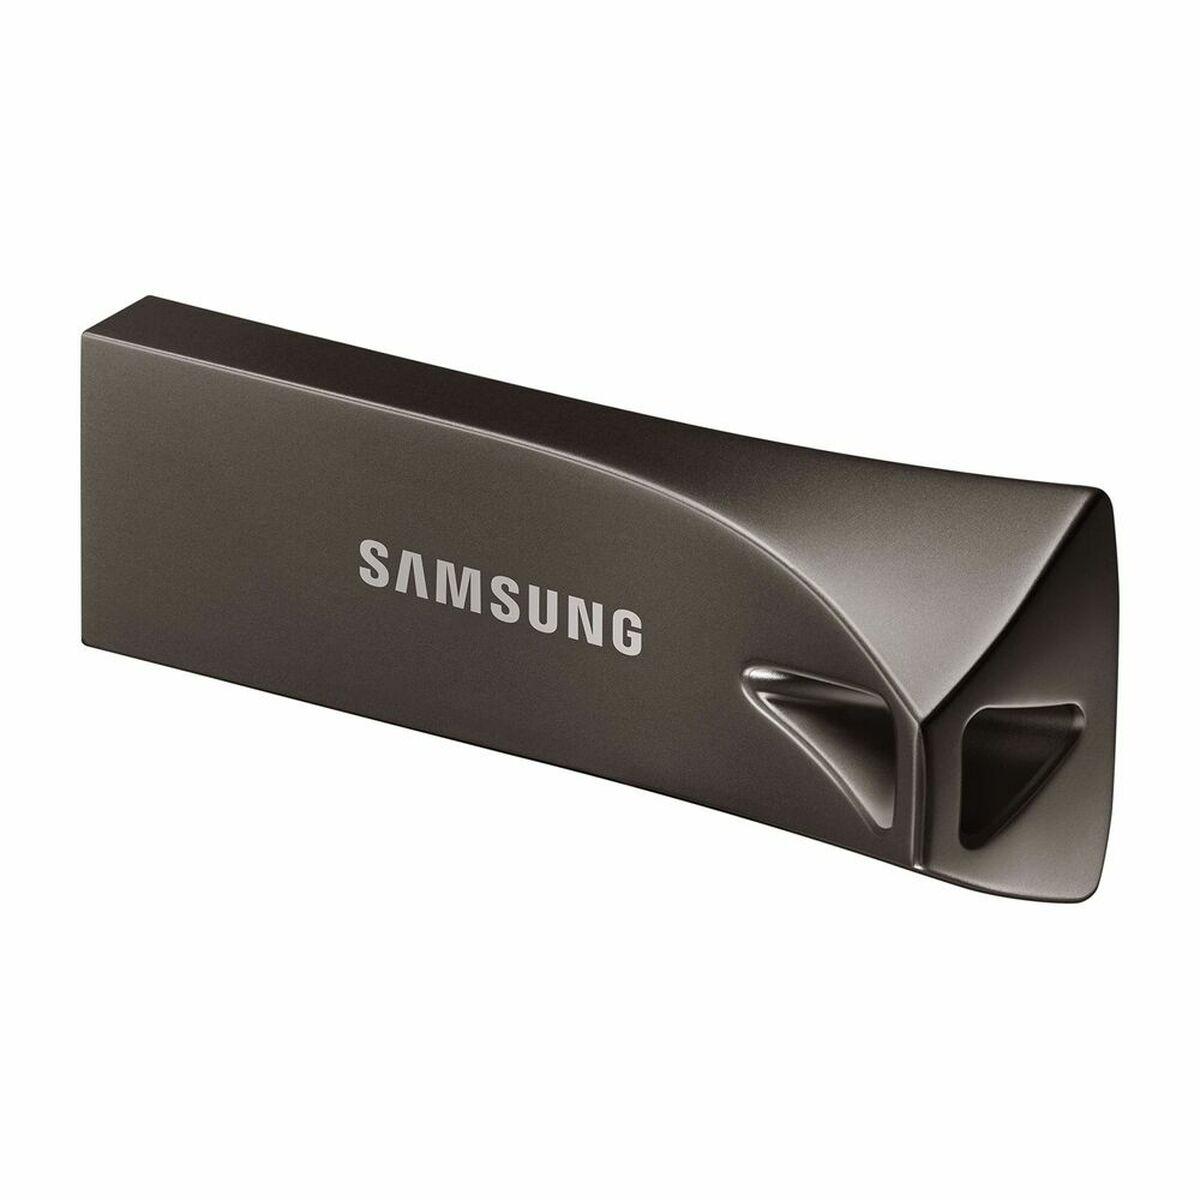 USB-stik Samsung MUF 256BE4/APC Grå 256 GB